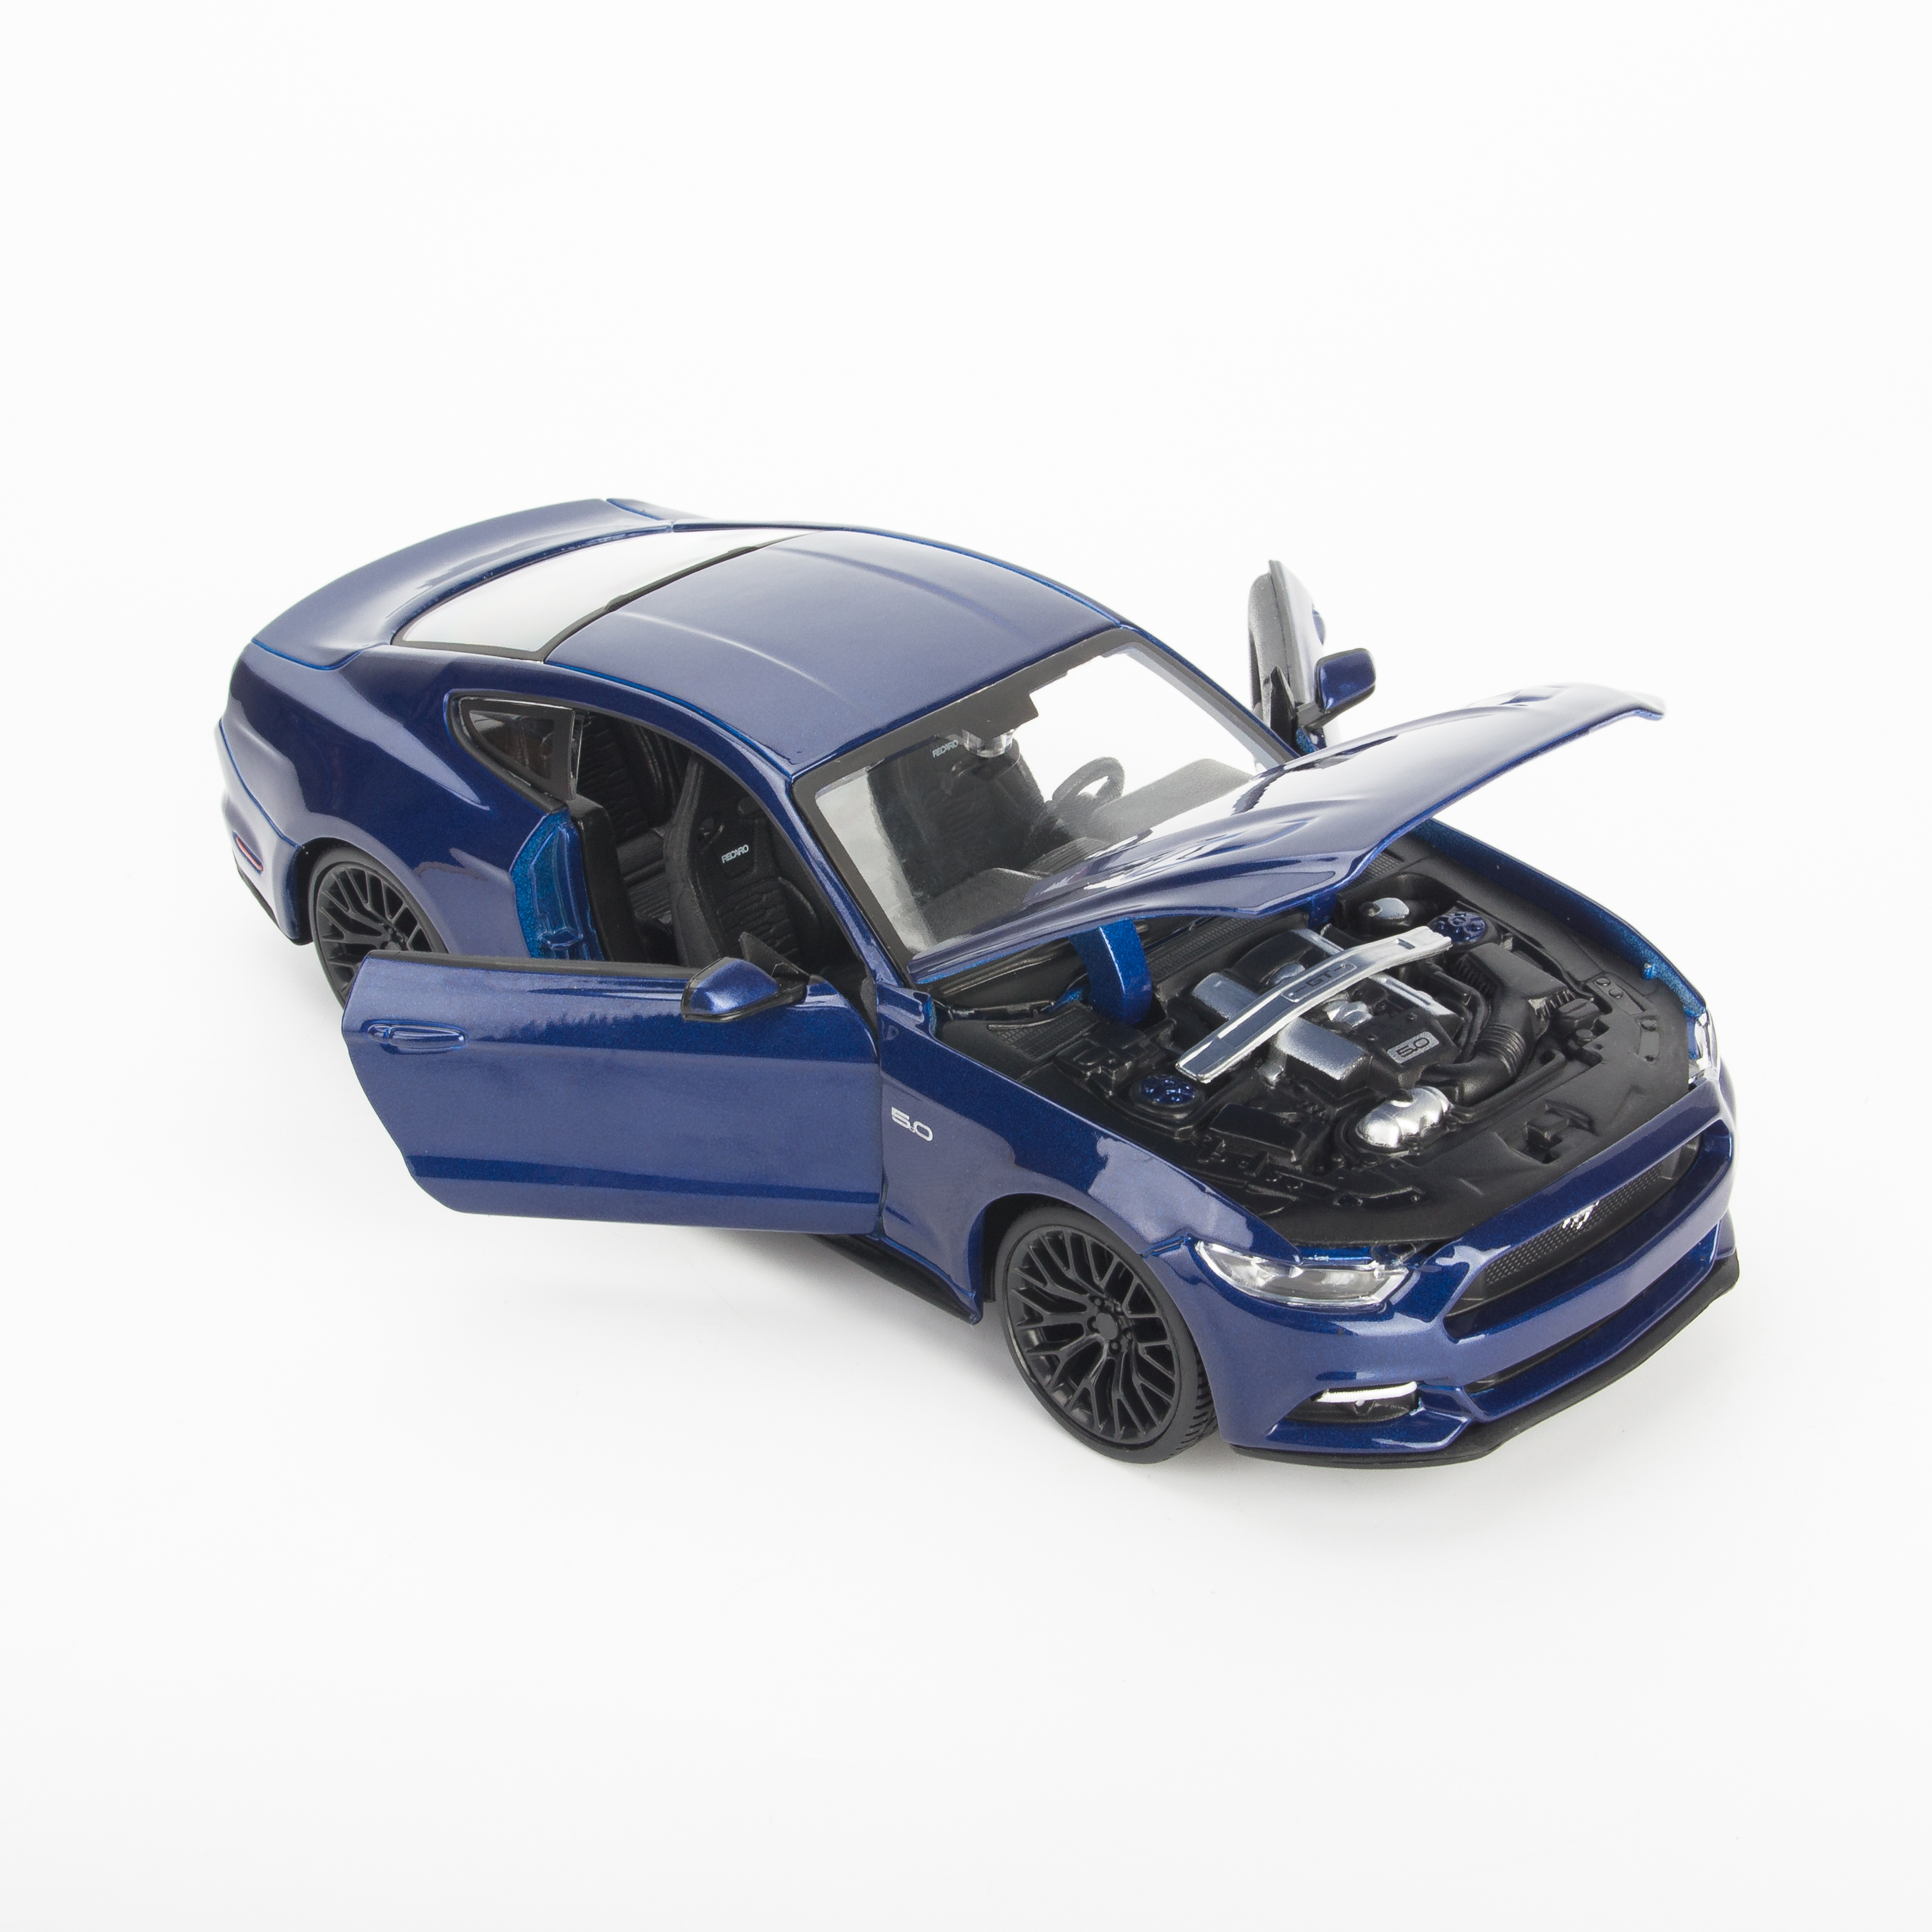 Mô Hình Xe Ford Mustang GT 2015 Blue 1:24 Maisto MH-31508